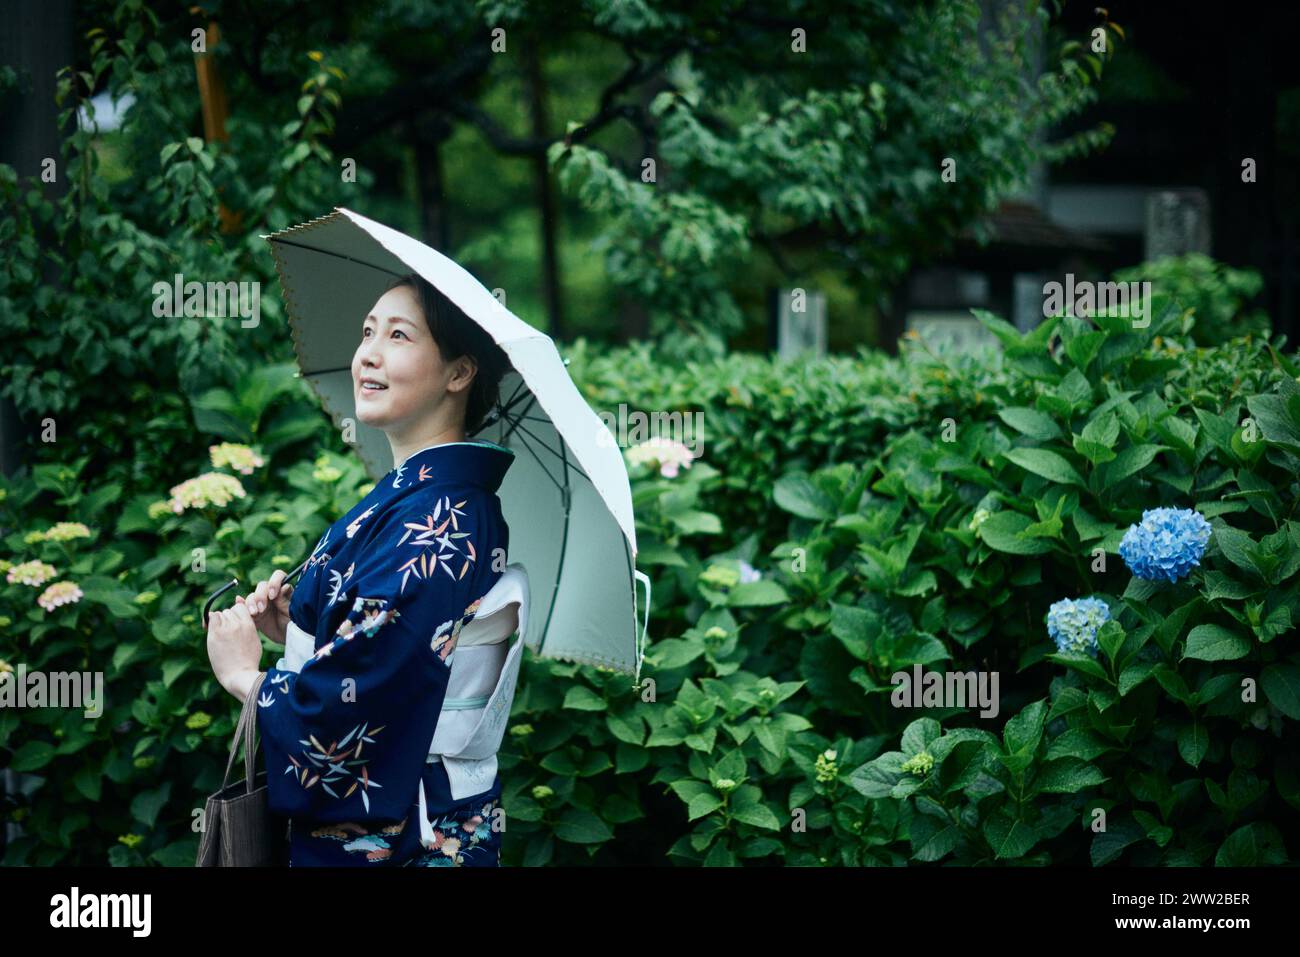 A woman in a kimono holding an umbrella Stock Photo